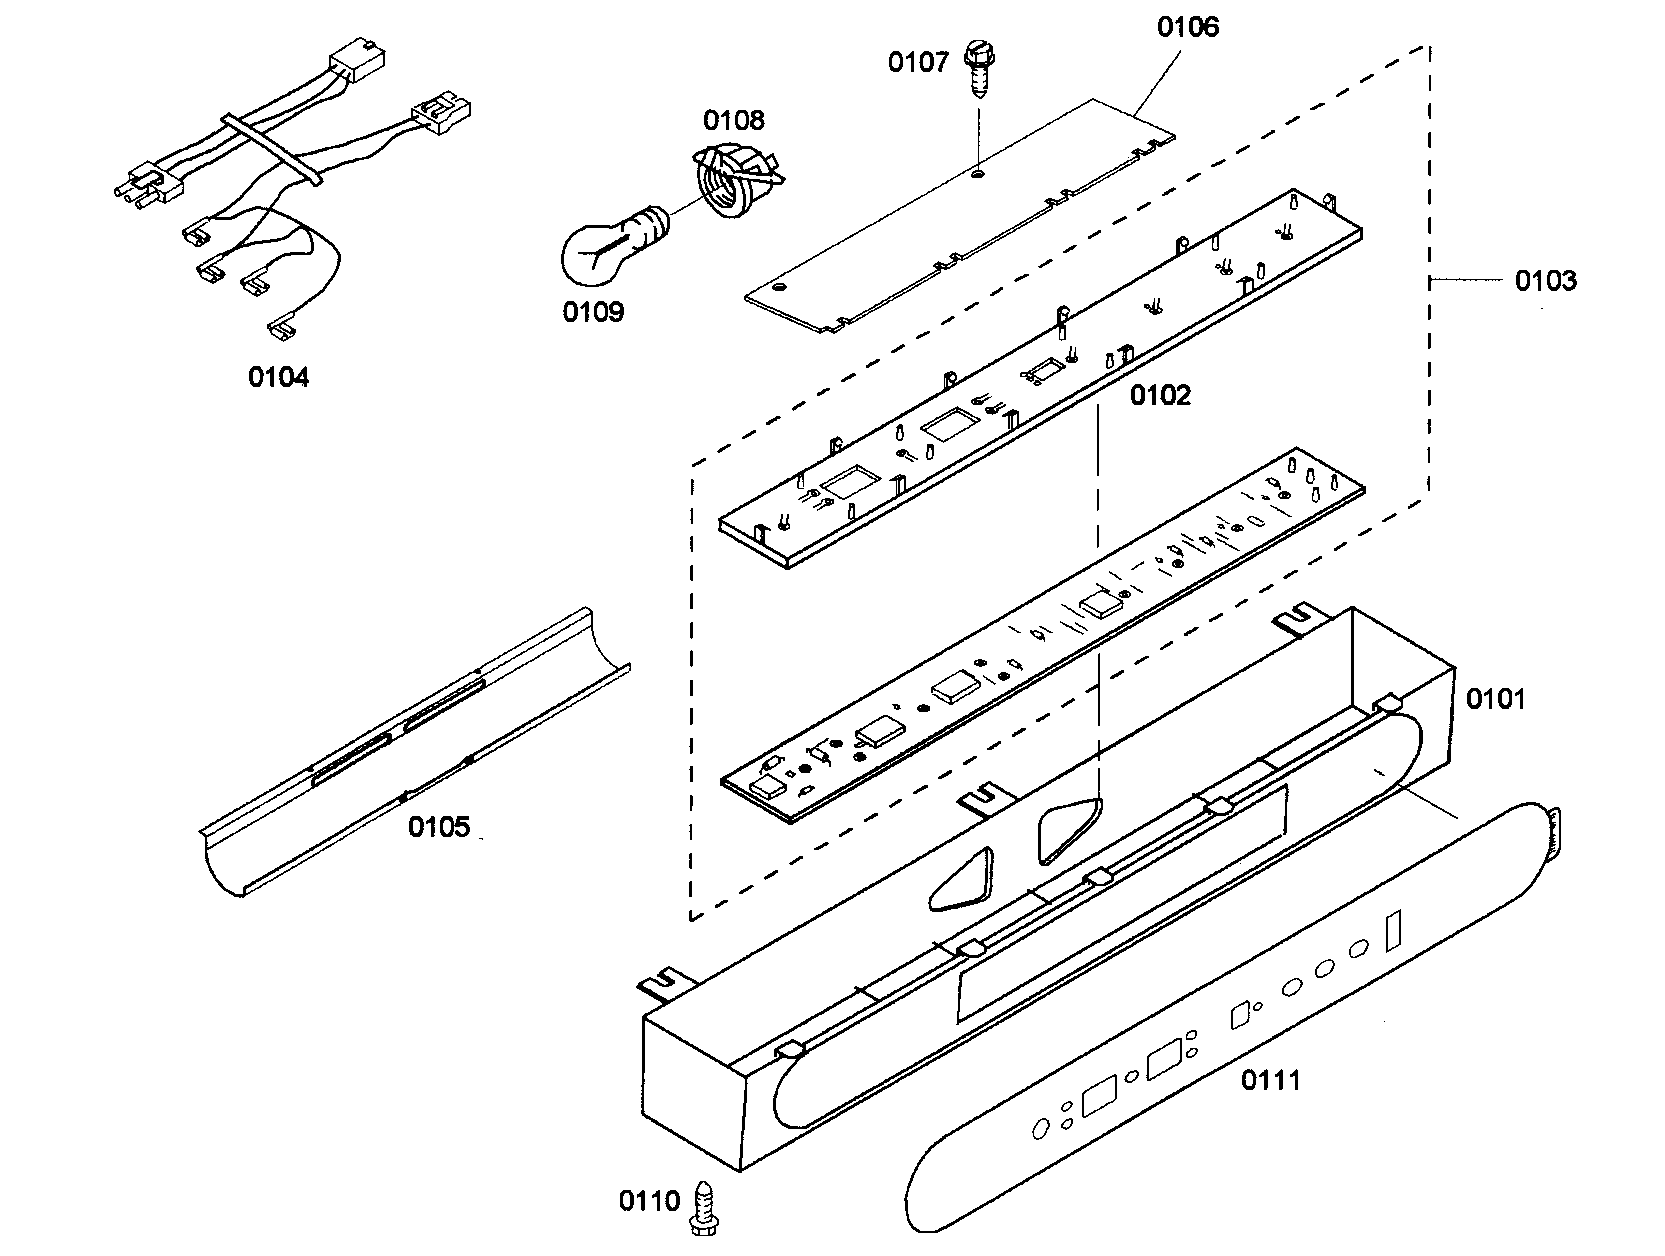 thermador refrigerator parts diagram